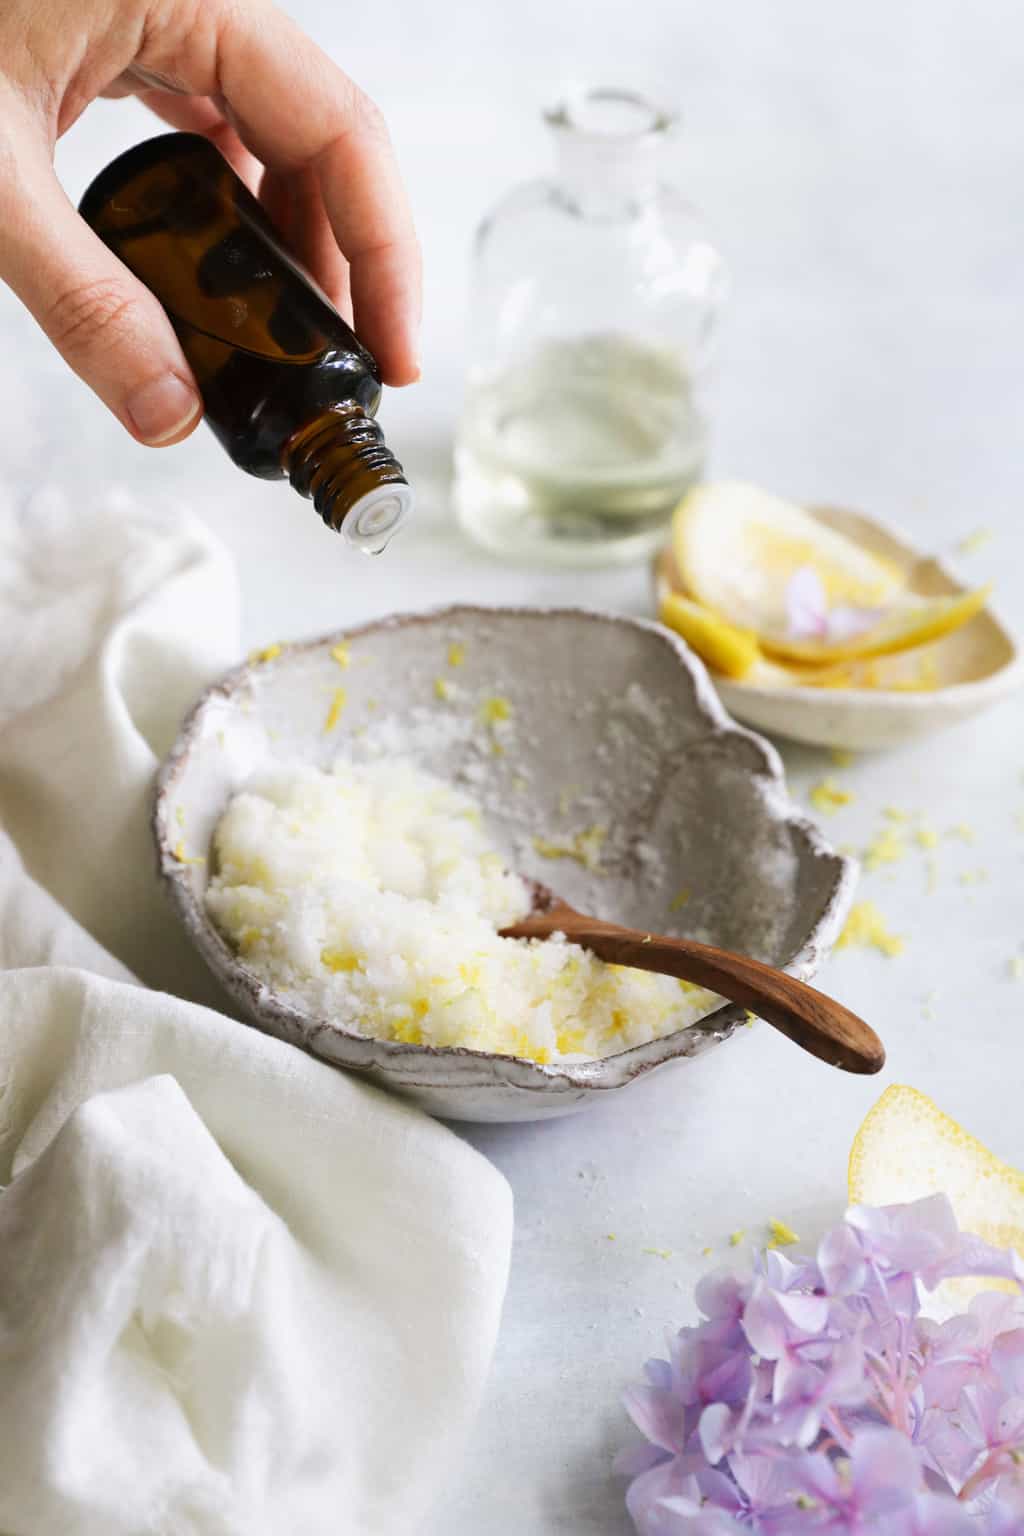 Adding optional extras like essential oils and lemon zest to a homemade Sugar scrub